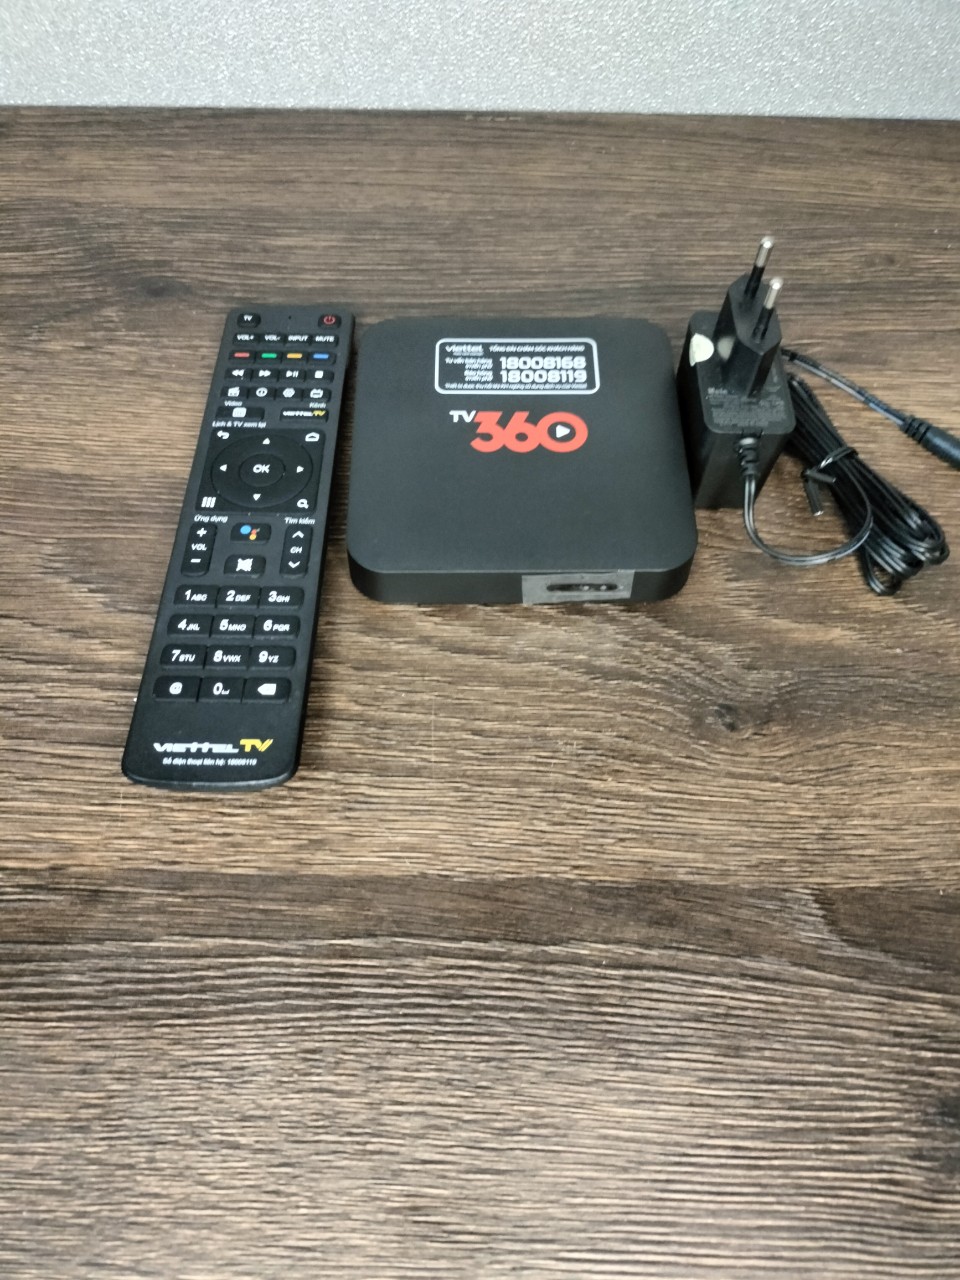 Box Viettel 360 lên mạng xem truyền hình biến tivi thương thành smart TV